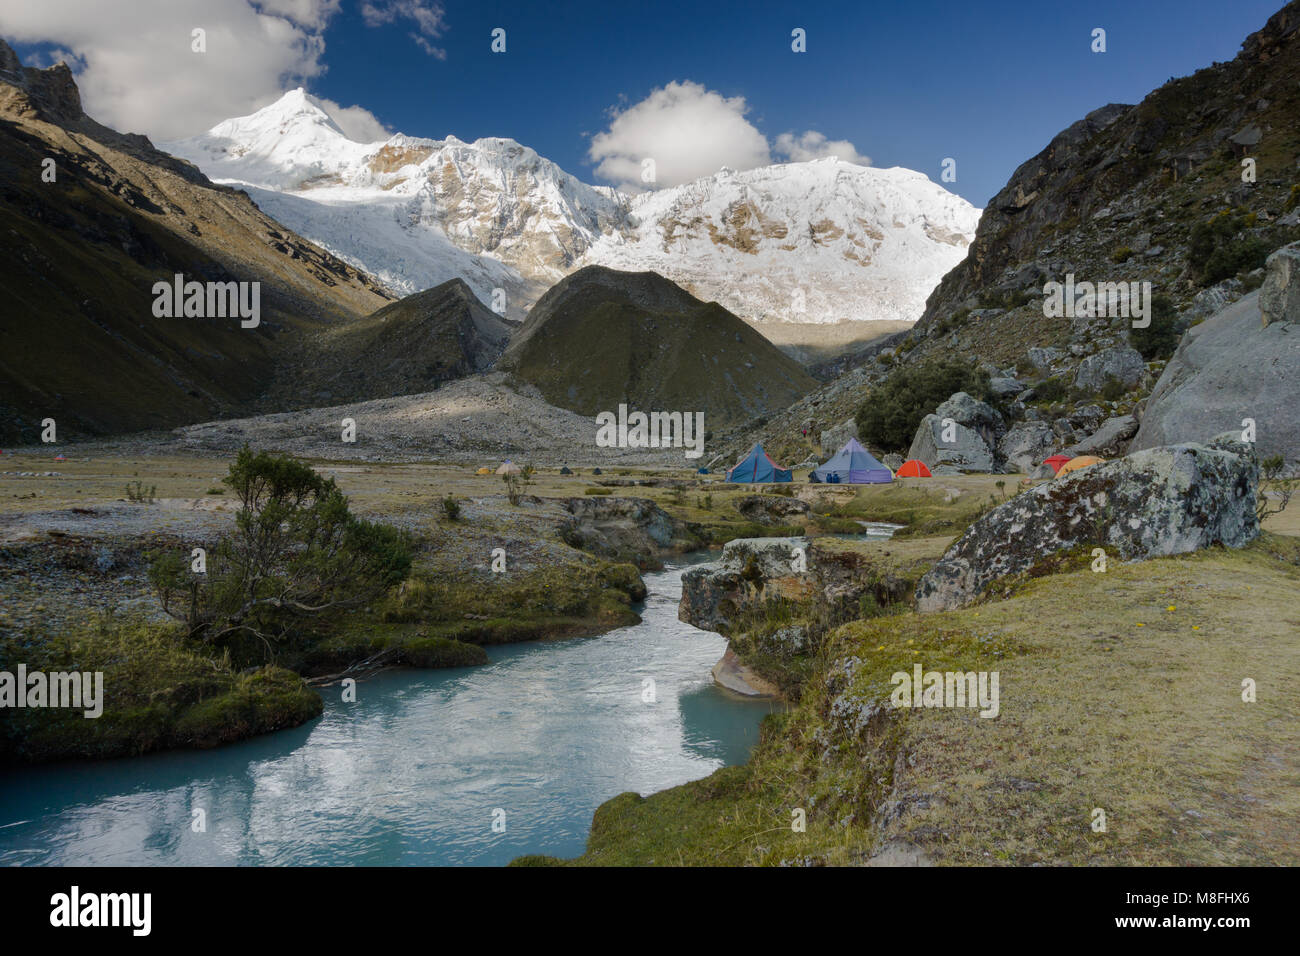 Camping dans le désert à distance des Andes au Pérou avec des montagnes enneigées et un ruisseau de montagne turquoise calme Banque D'Images